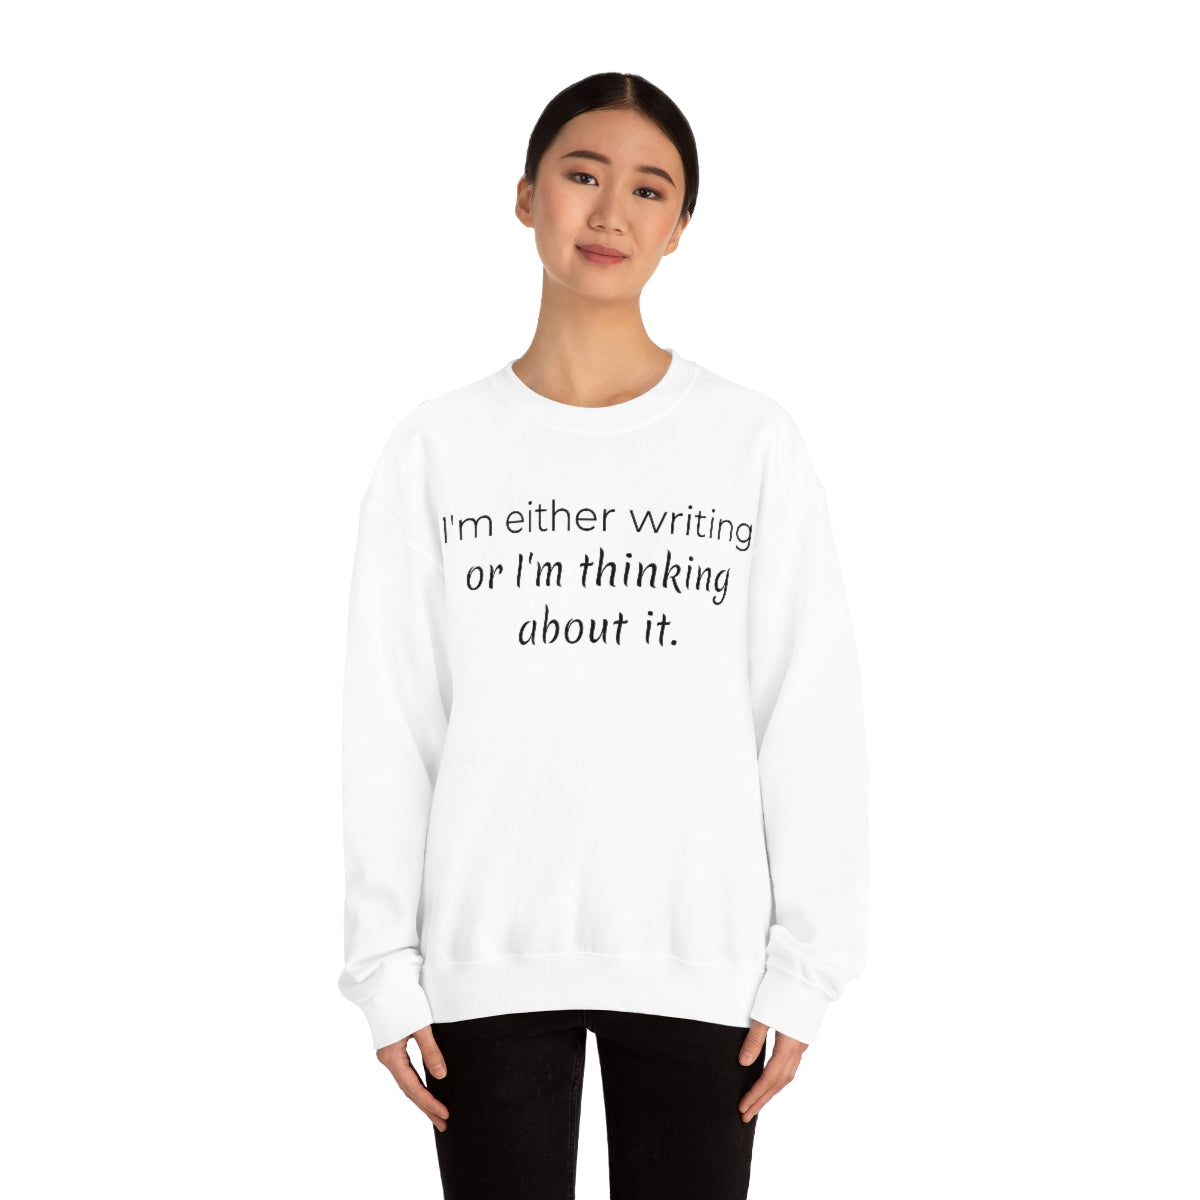 I'm either writing or I'm thinking about it // Writing Themed Unisex Crewneck Sweatshirt